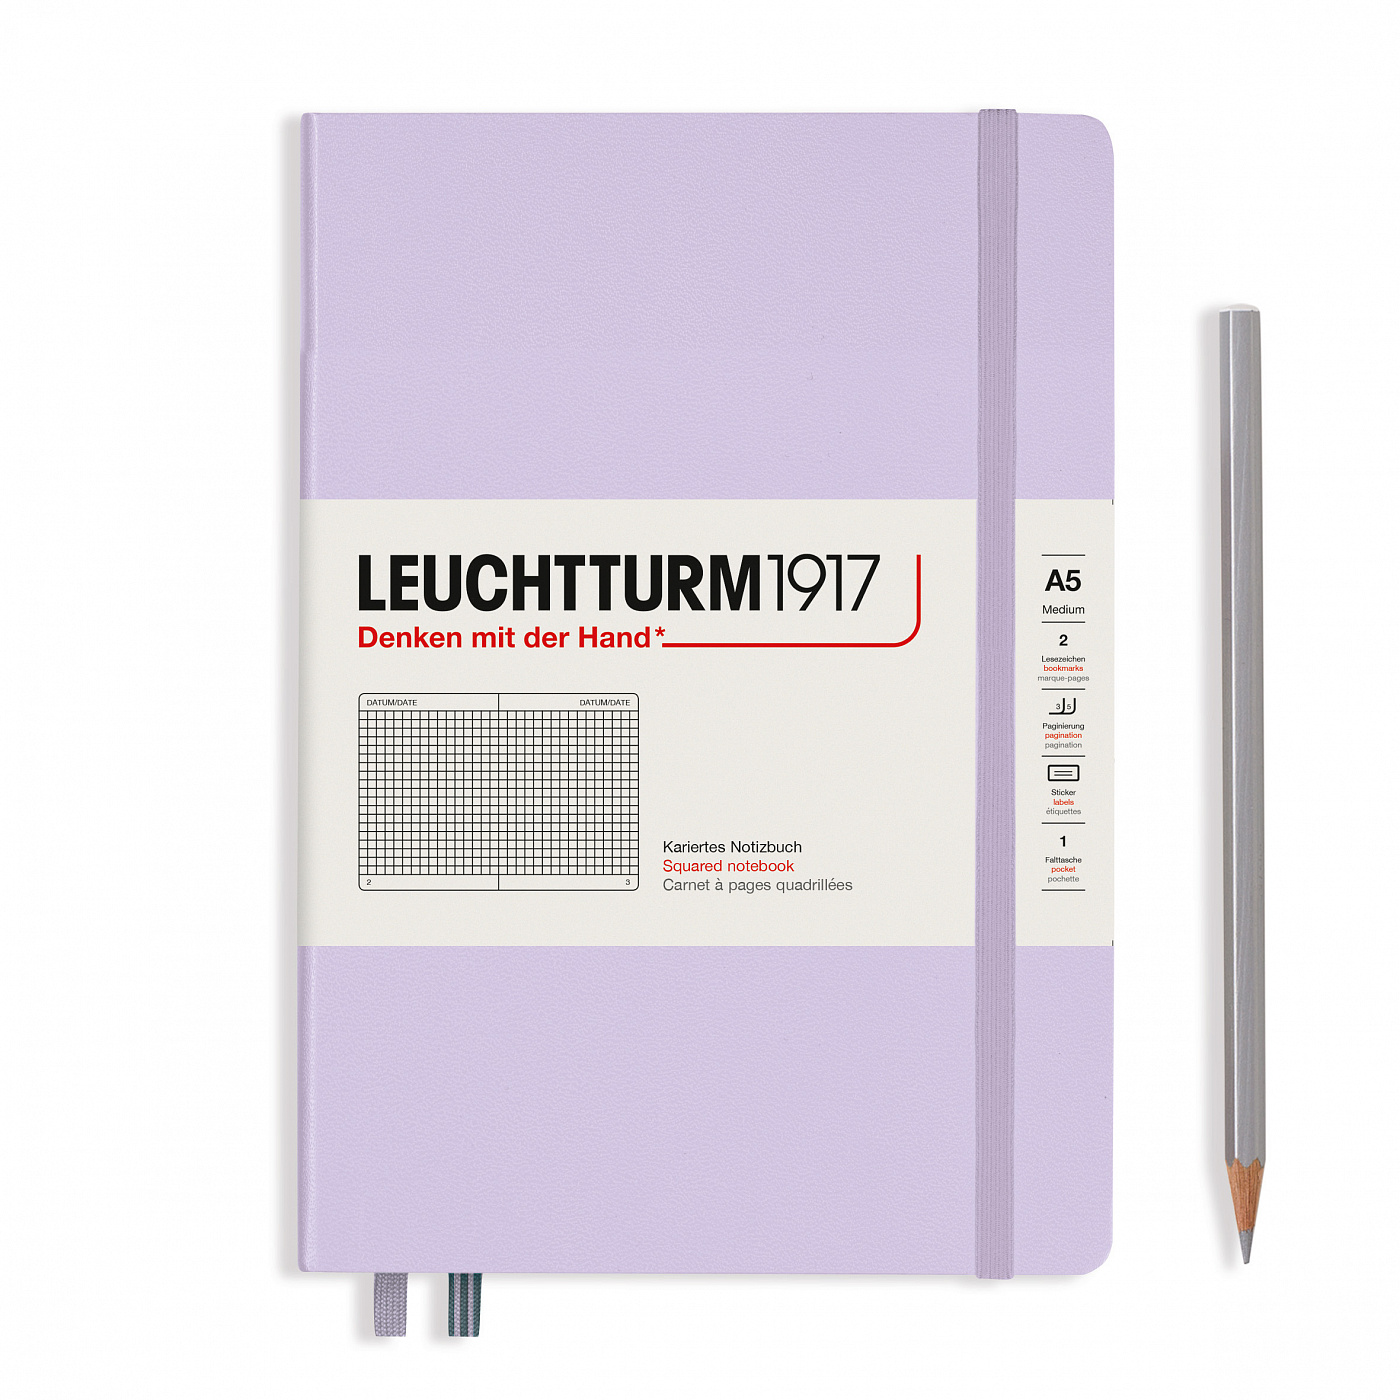 Записная книжка в клетку Leuchtturm A5 251 стр., твёрдая обложка, сиреневый записная книжка moleskine classic pocket линейка синяя 96 листов а6